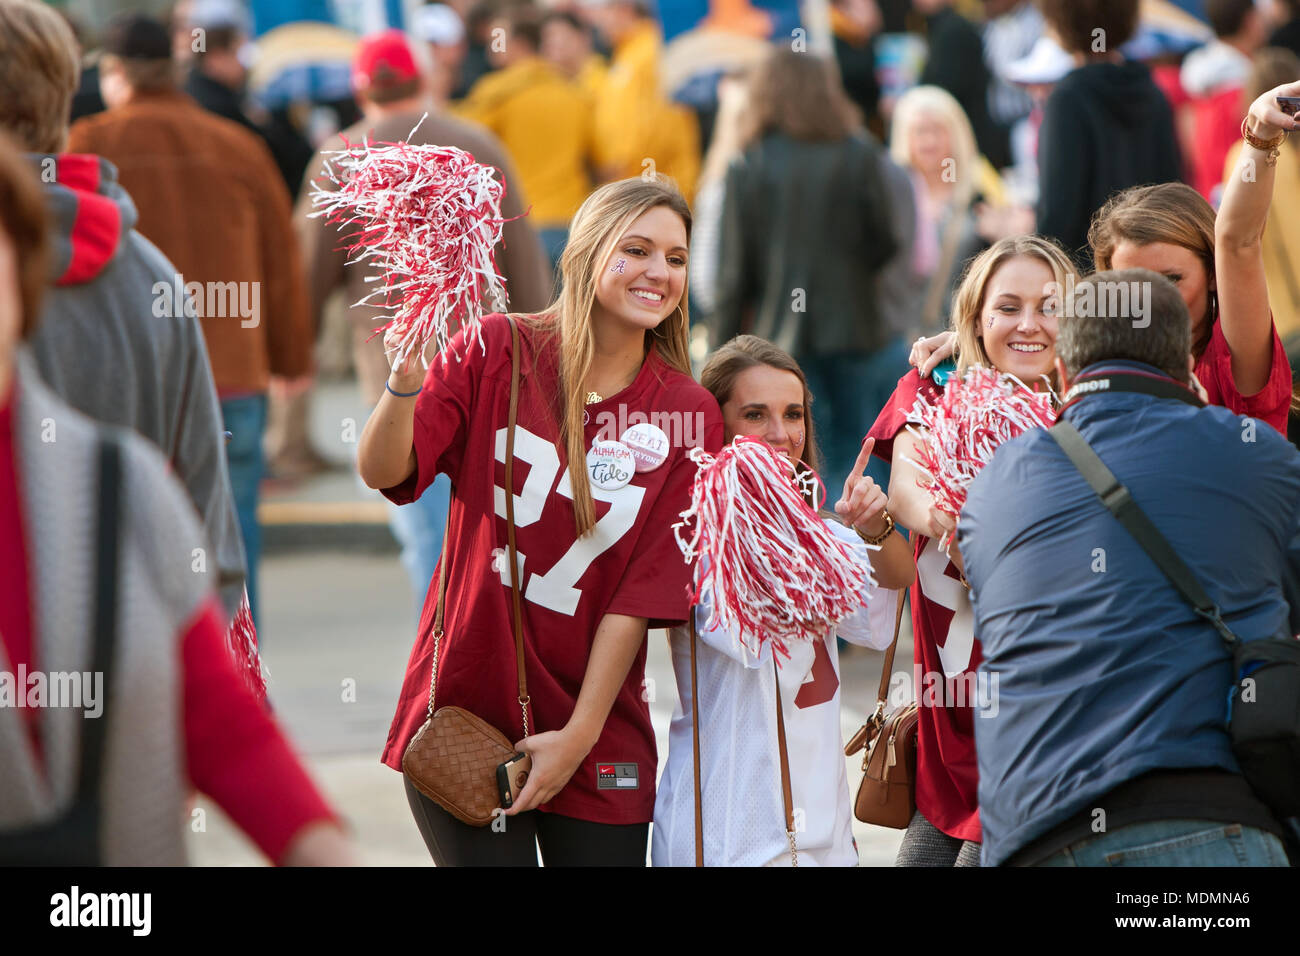 Femmina University of Alabama fan vestita in rosso cremisi comportano per le foto come si cammina verso il SEC partita di campionato il 6 dicembre 2014 in Atlanta, GA. Foto Stock